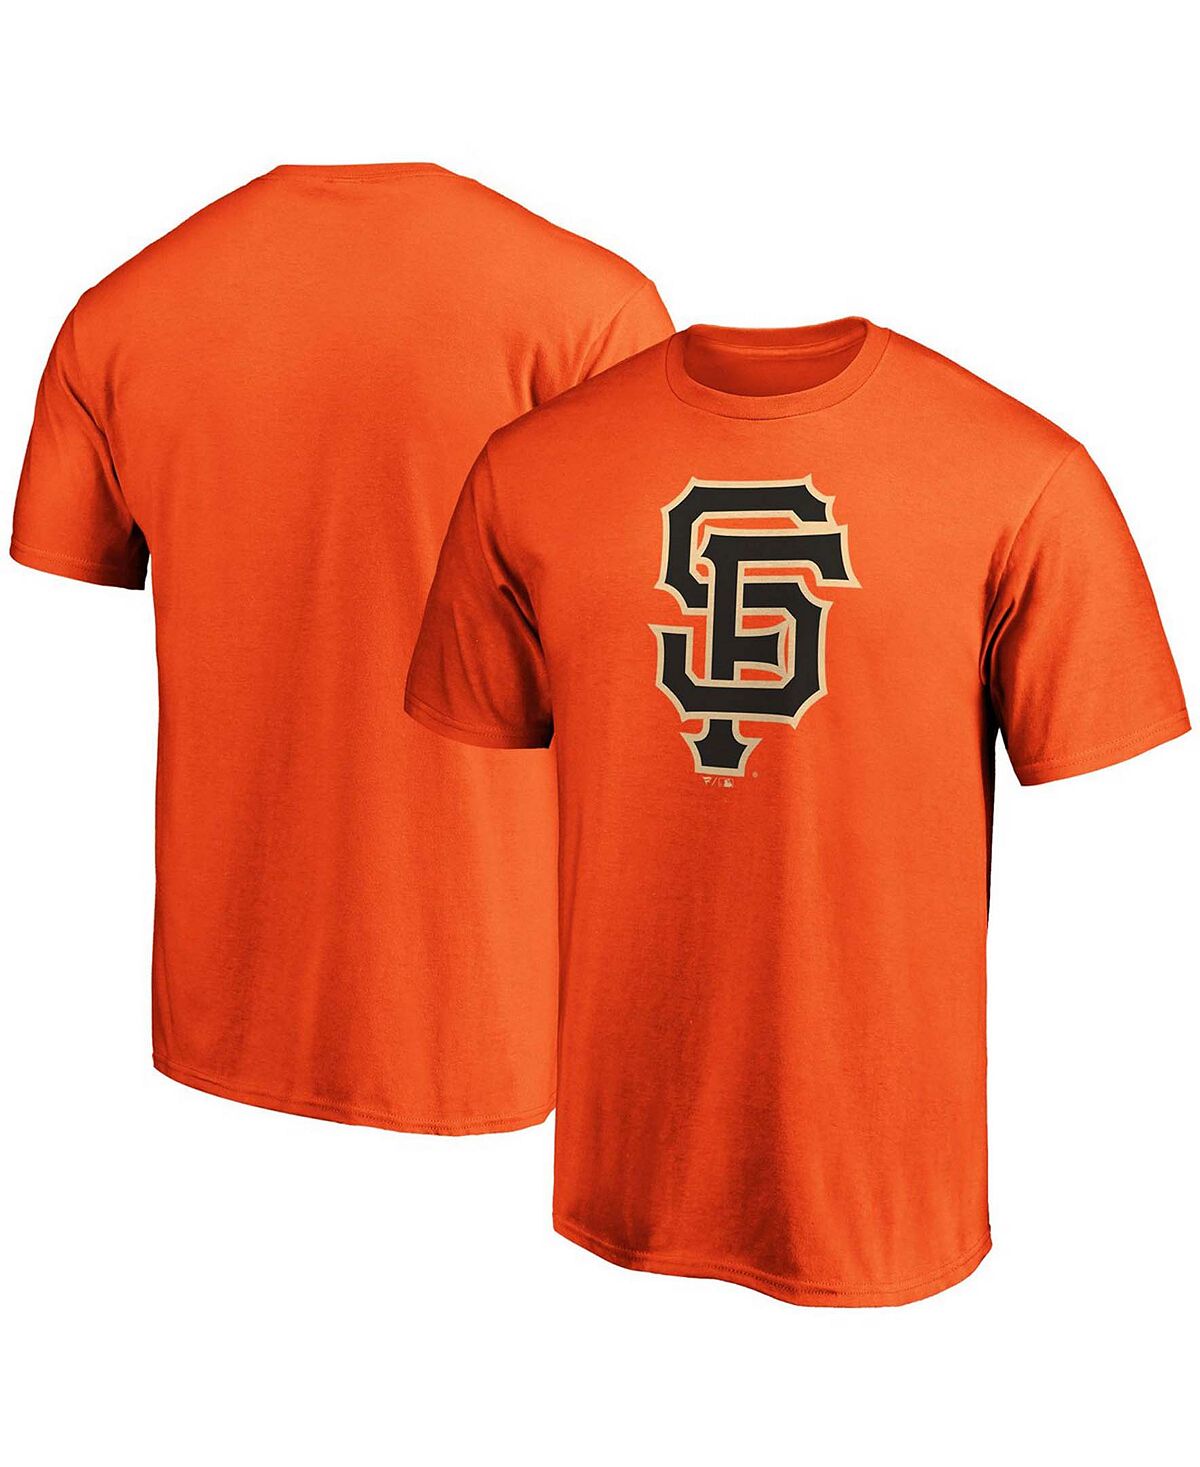 цена Мужская футболка orange san francisco giants с официальным логотипом Fanatics